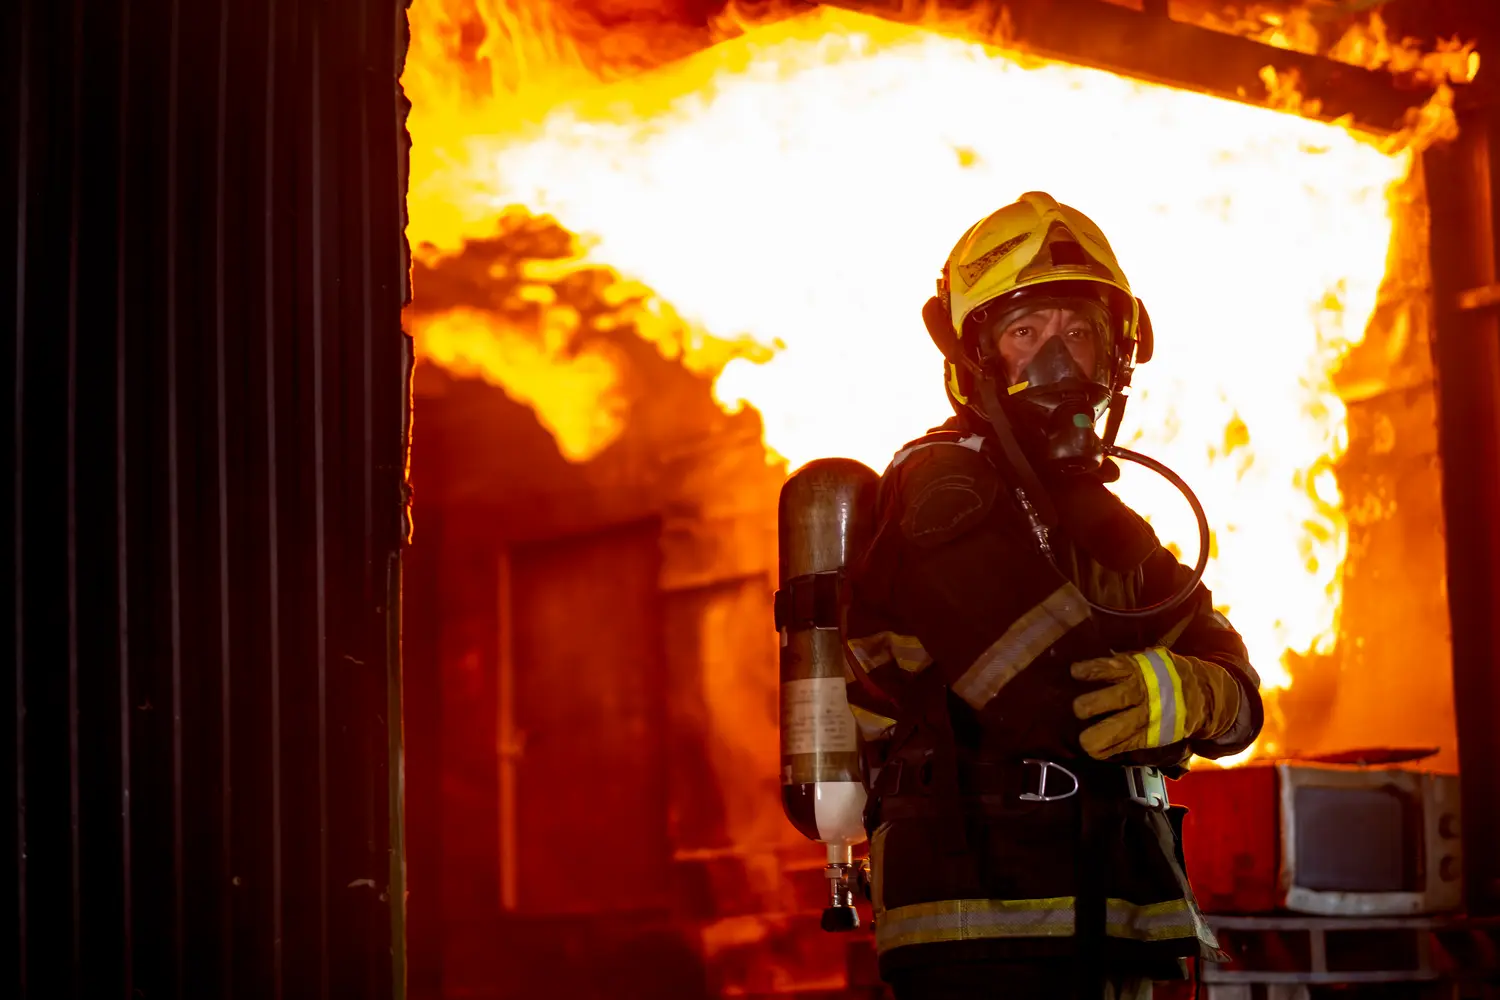 Fiche métier : Agent de sécurité incendie (salaire, formation